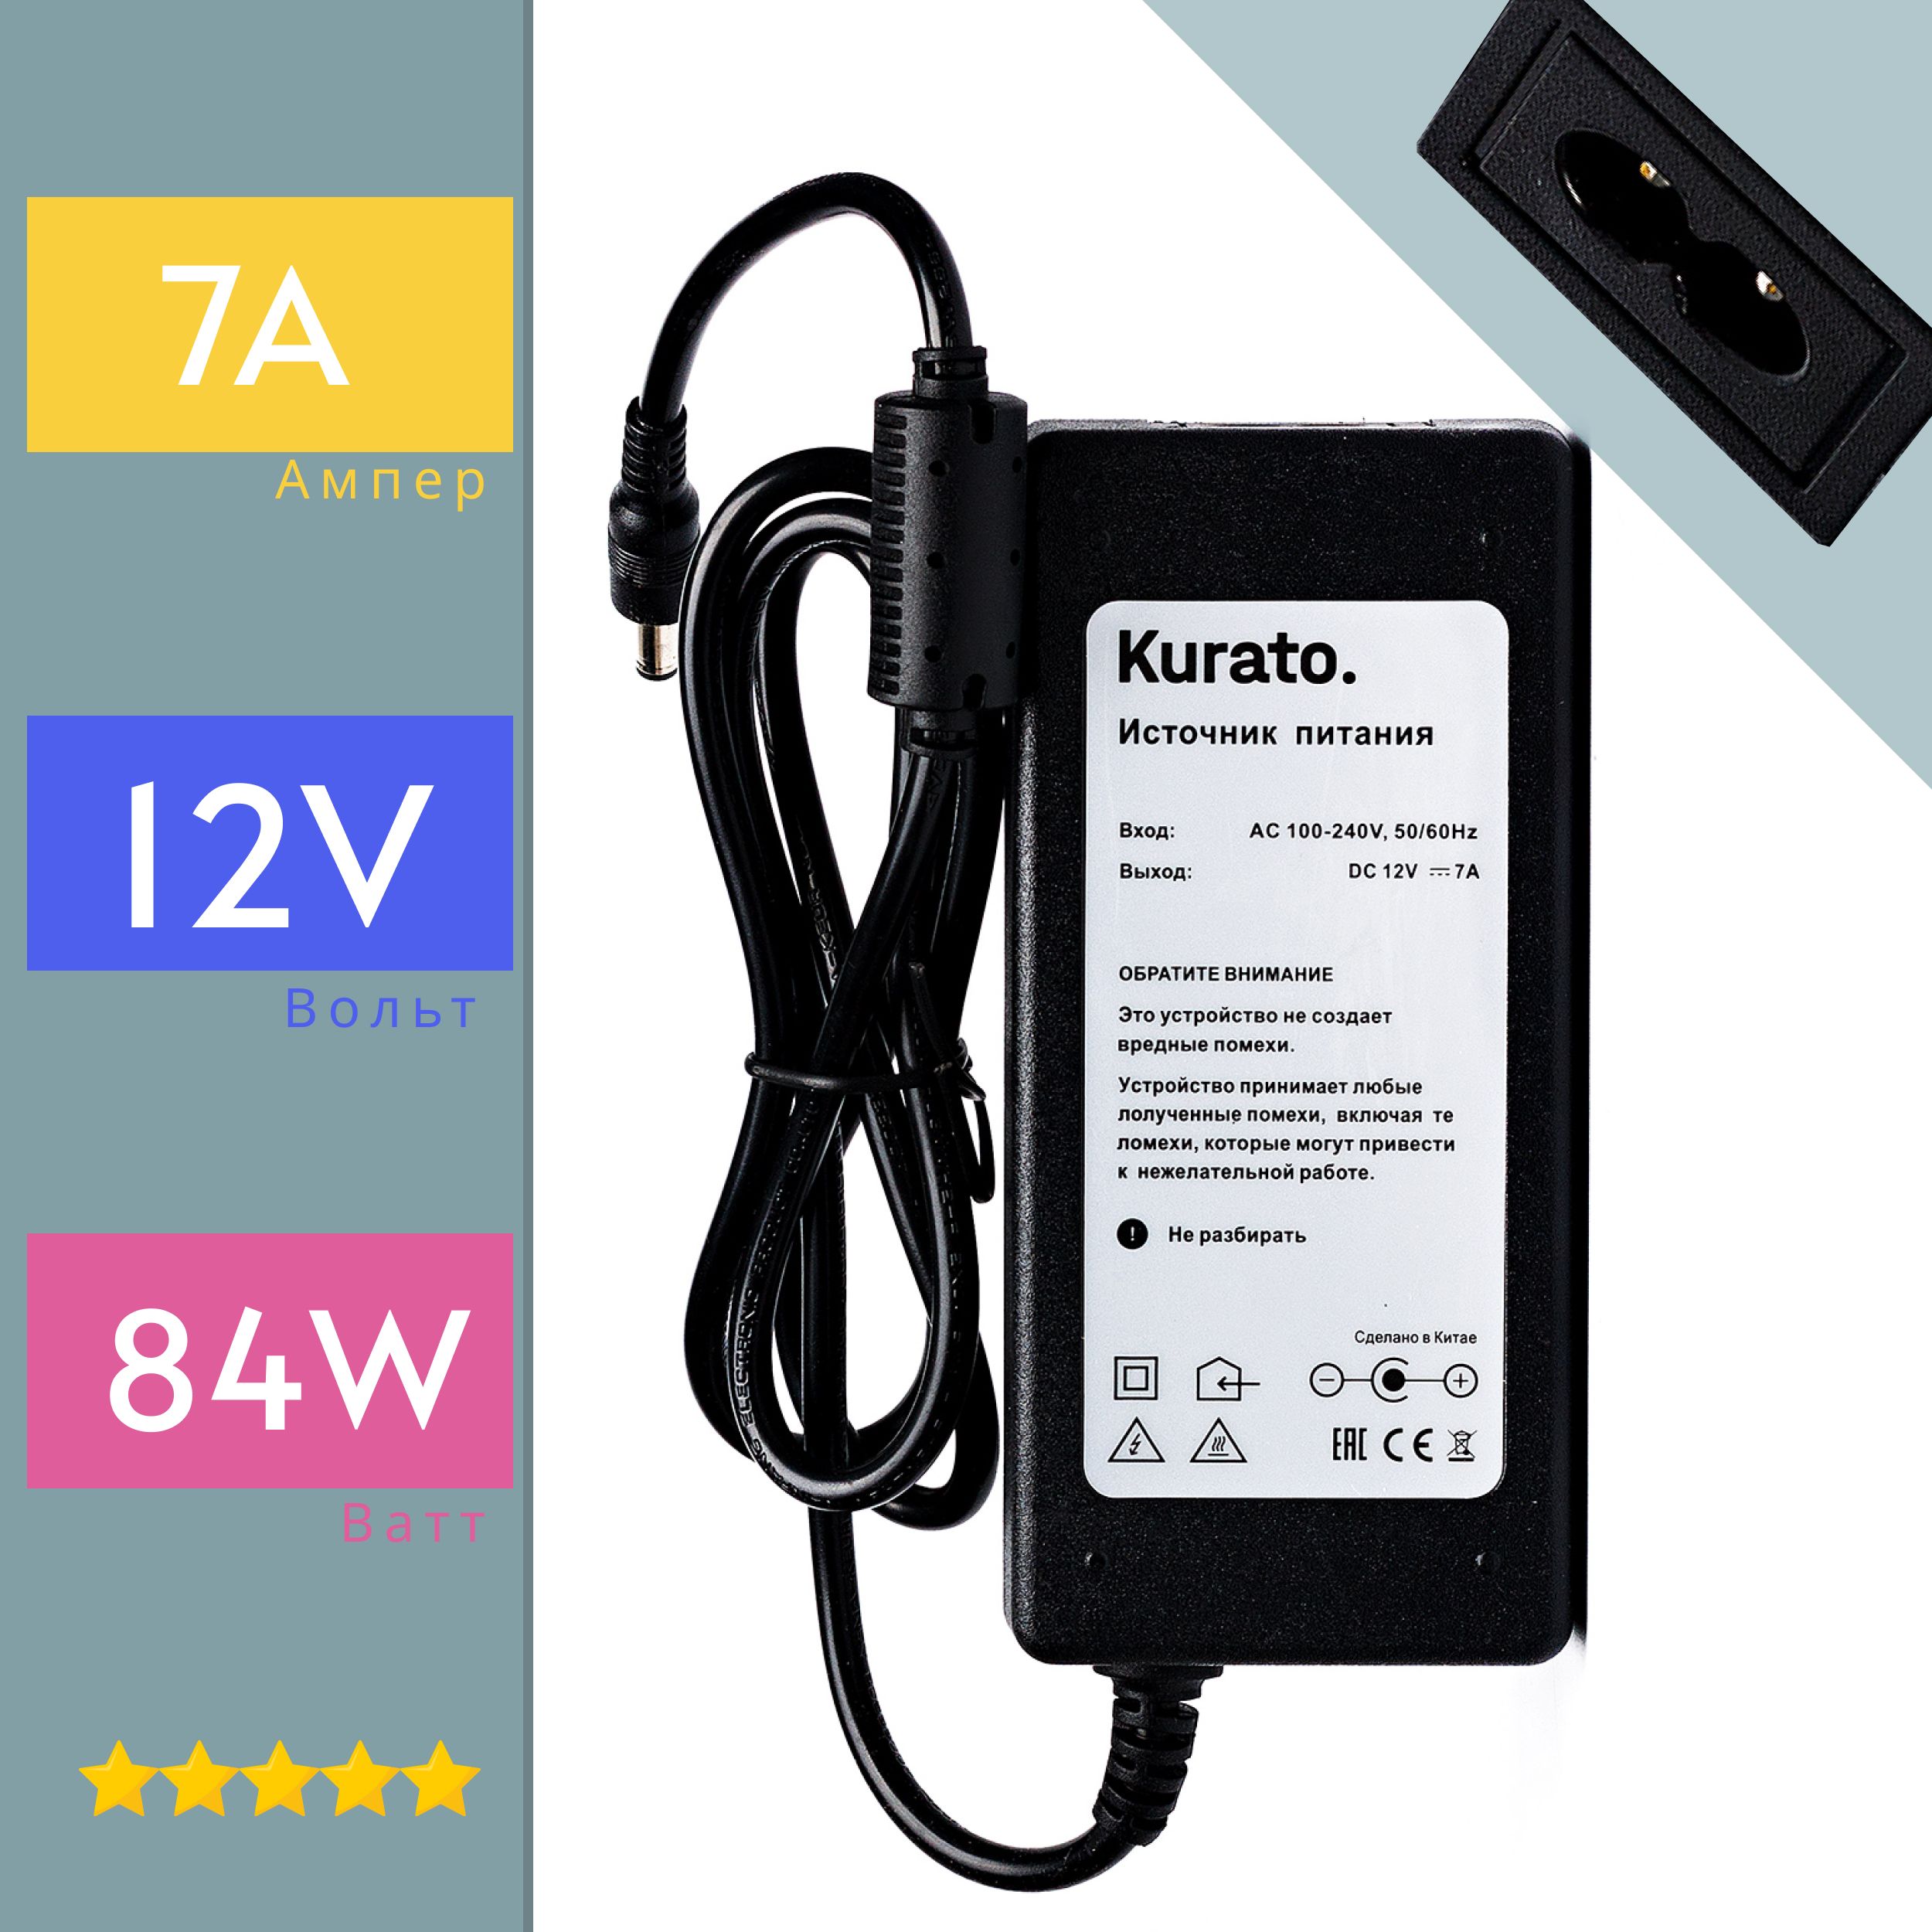 Блок питания Kurato 12V для светодиодной ленты, 7A, 84W